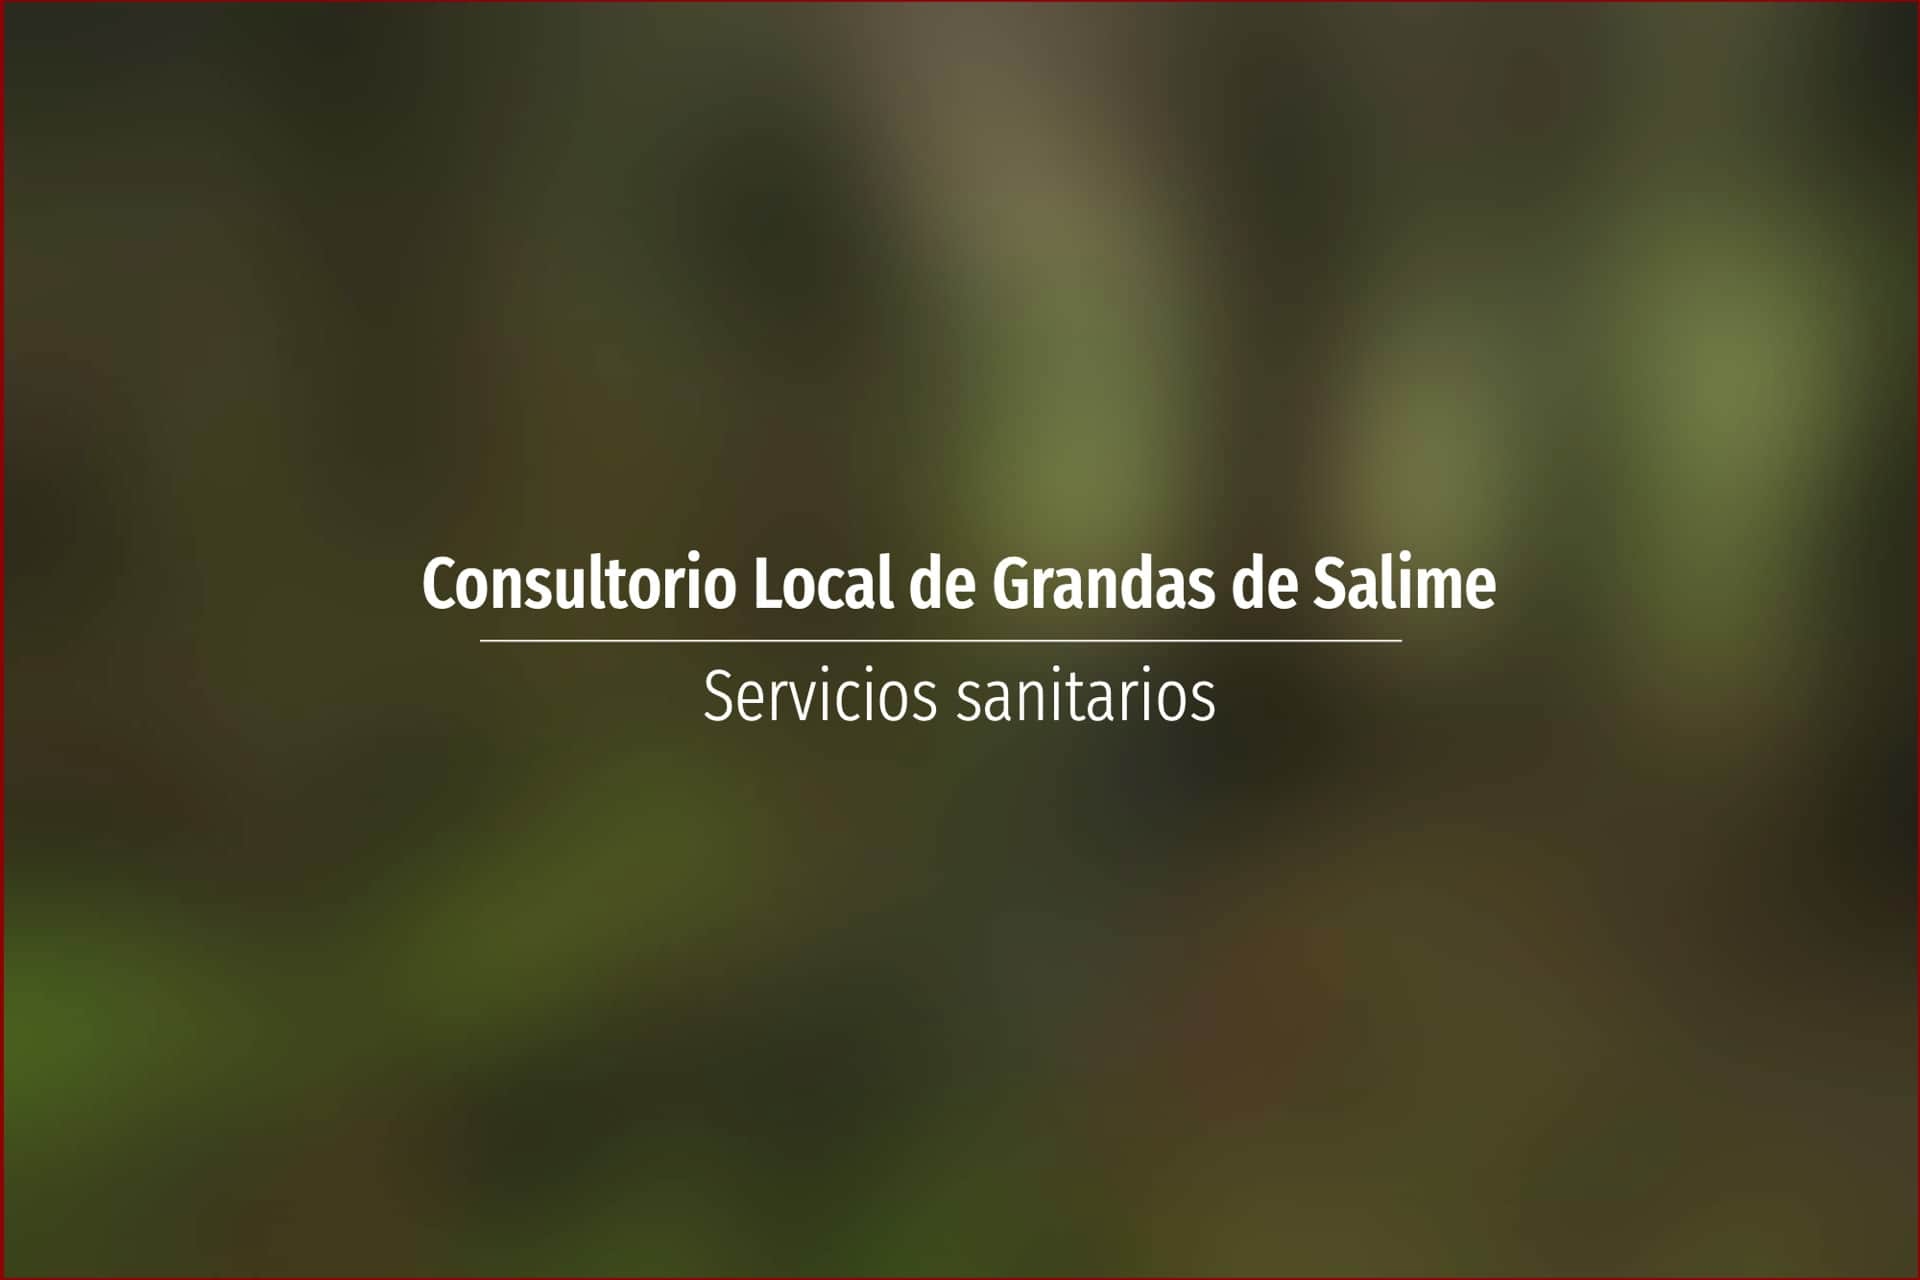 Consultorio Local de Grandas de Salime